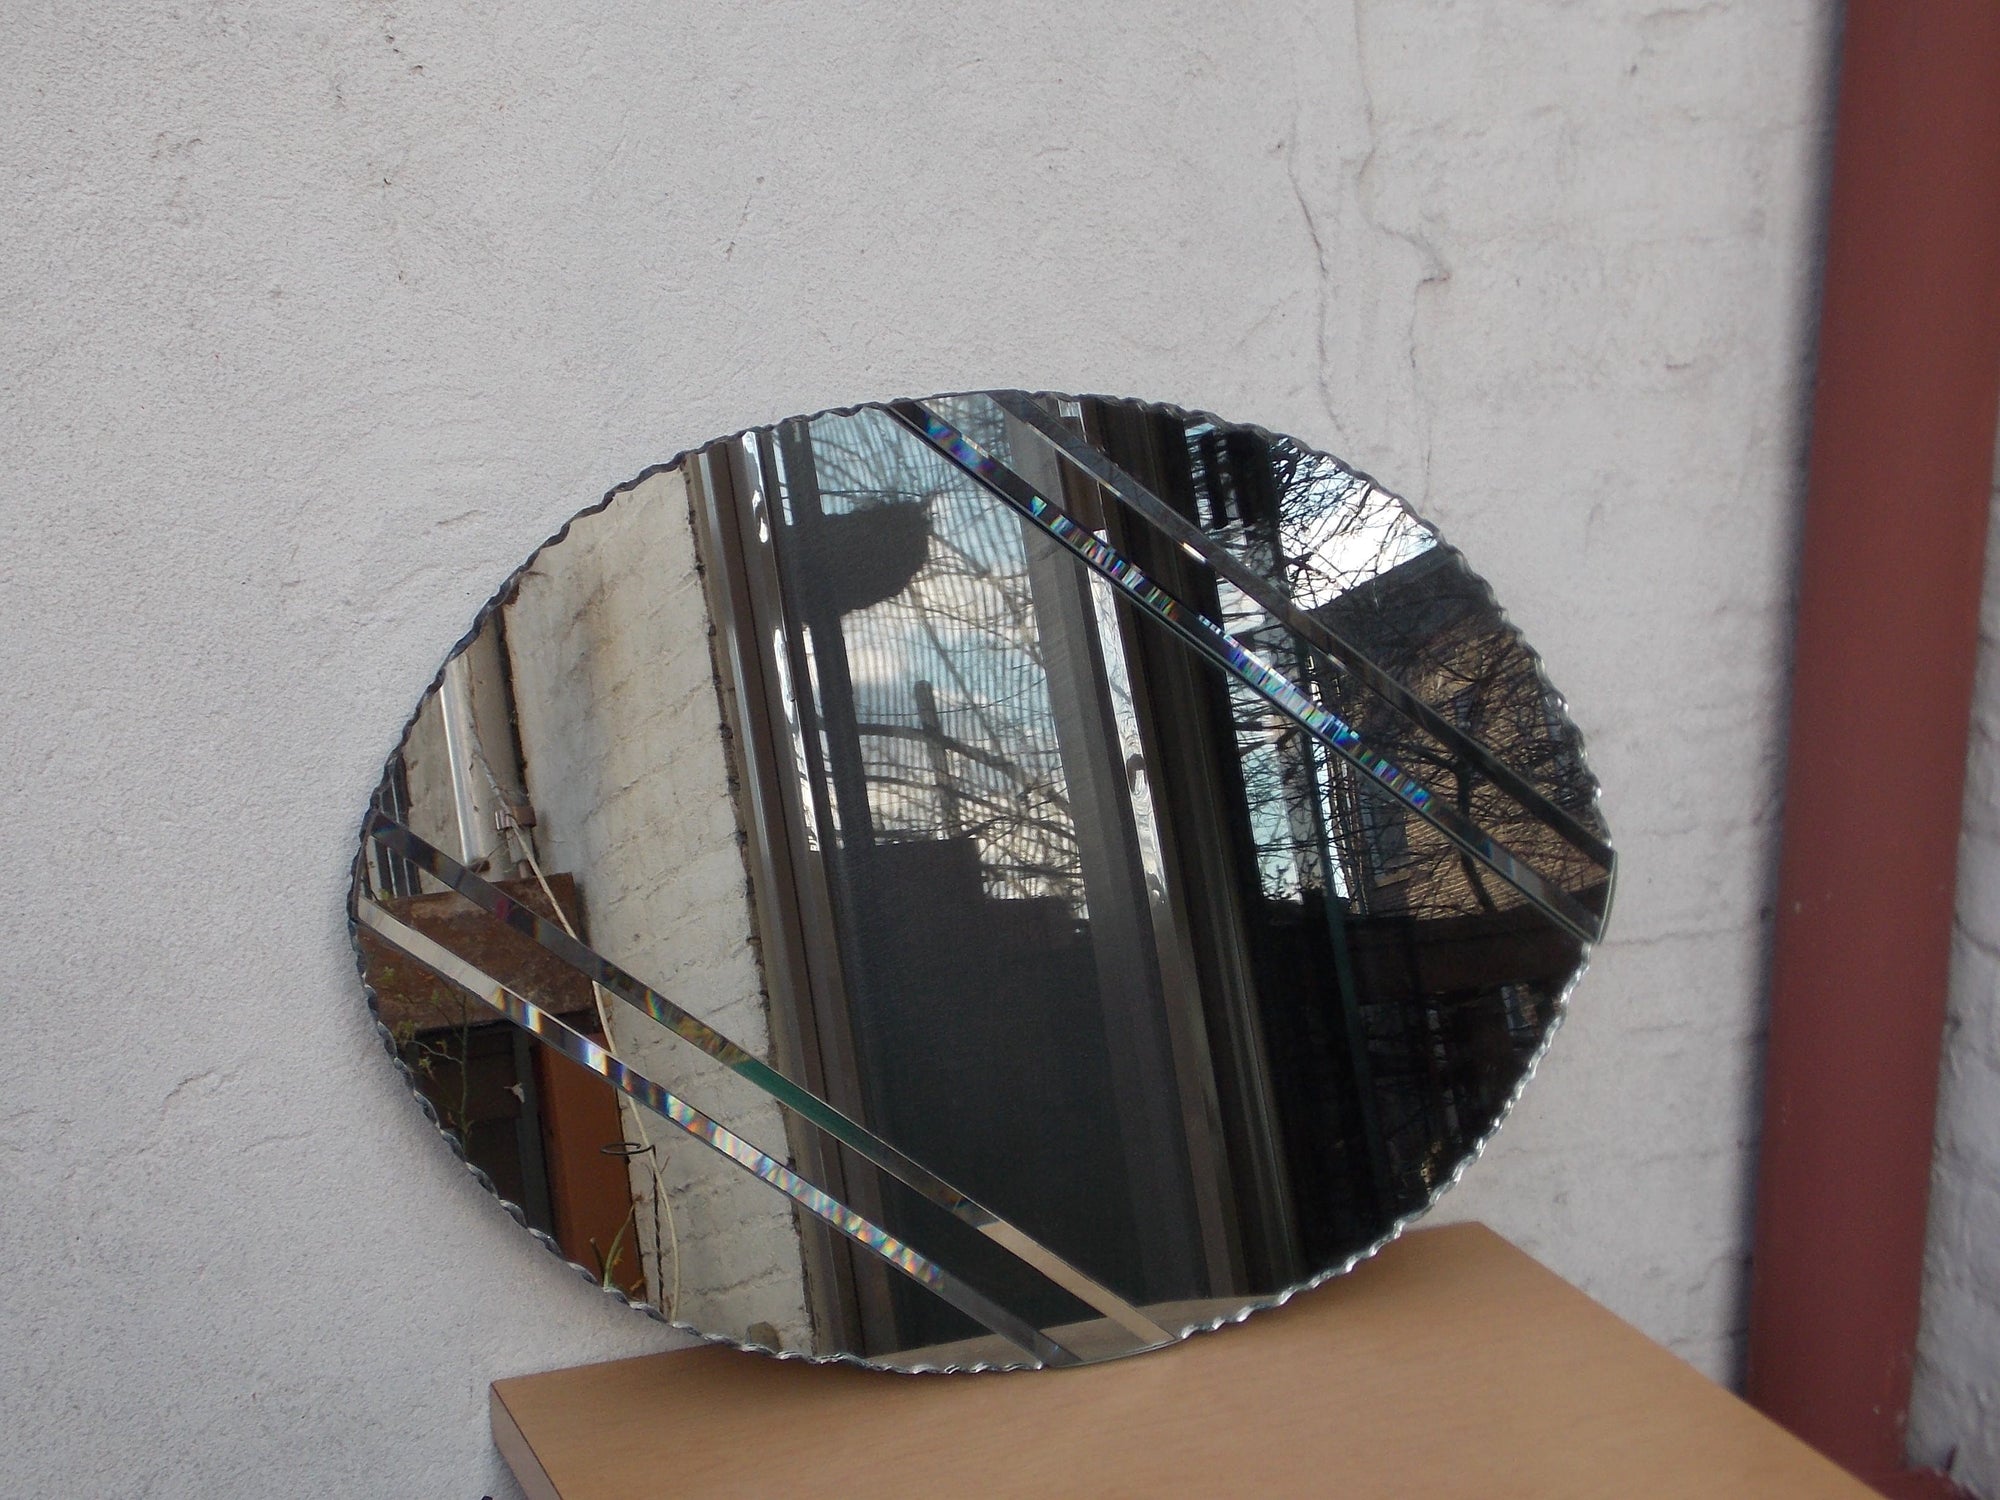 I Like Mike's Mid Century Modern Wall Decor & Art Scalloped Heavy Oval Neo Deco Wall Mirror